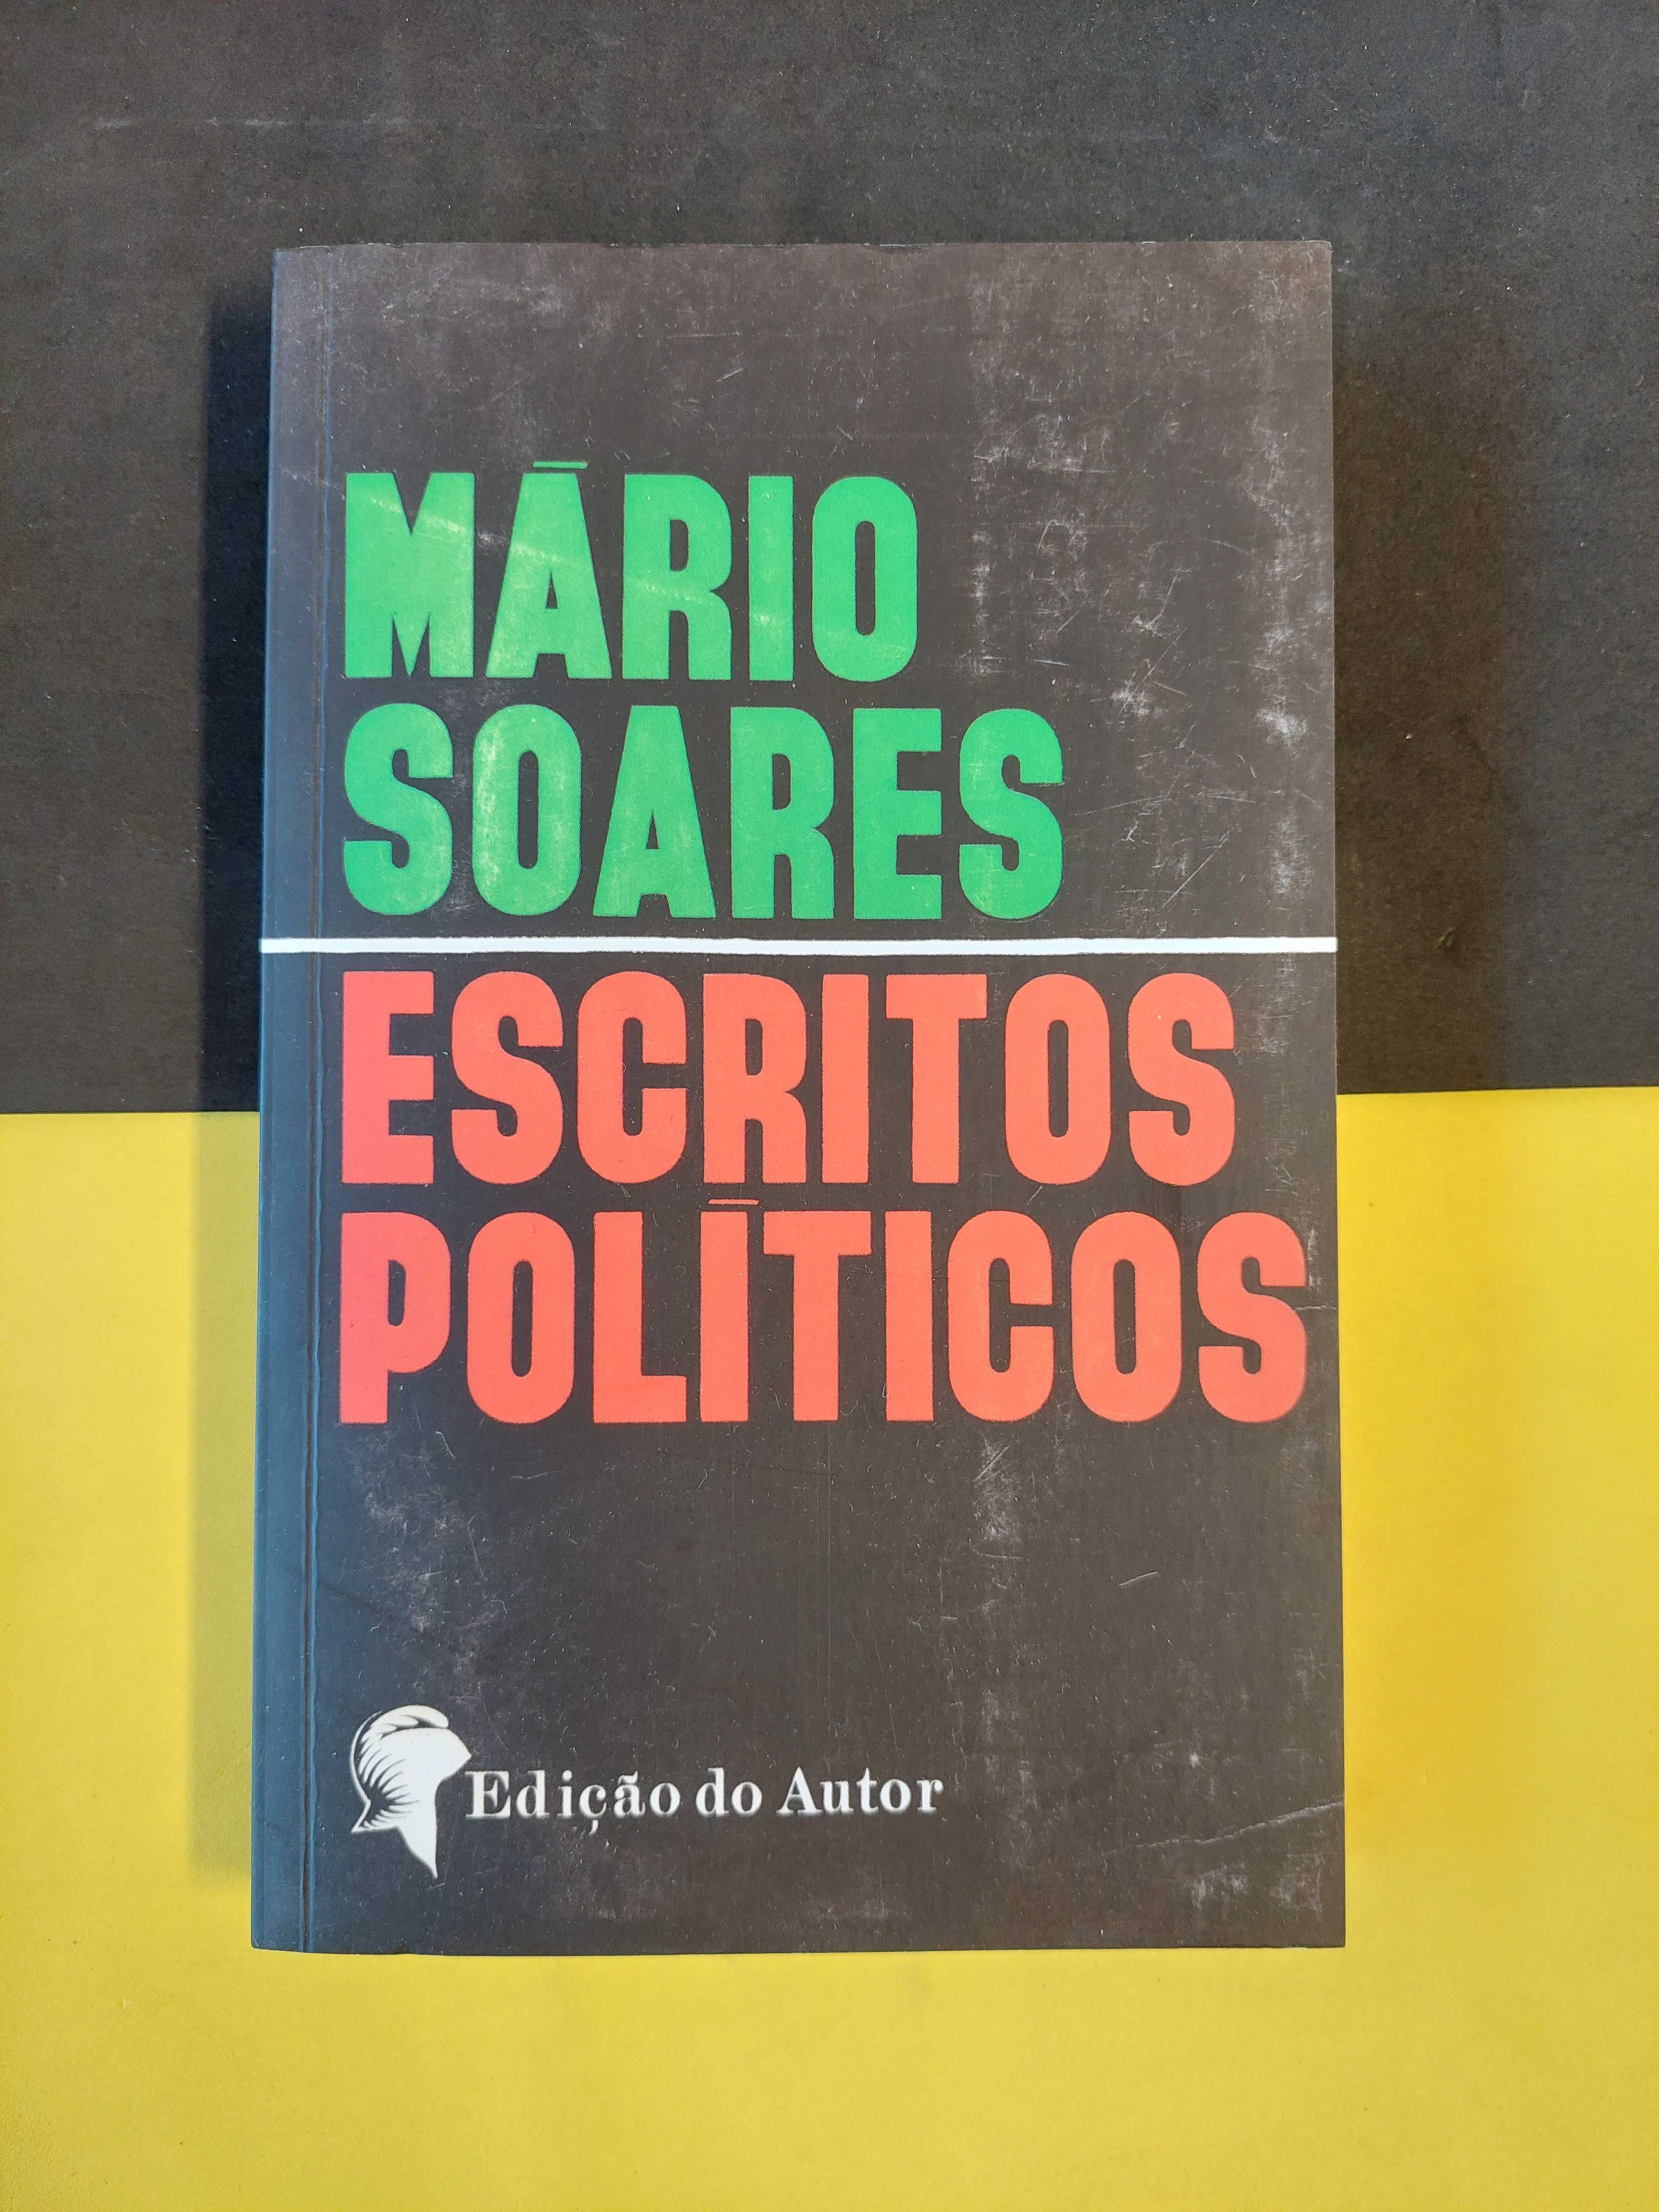 Mário Soares - Escritos políticos